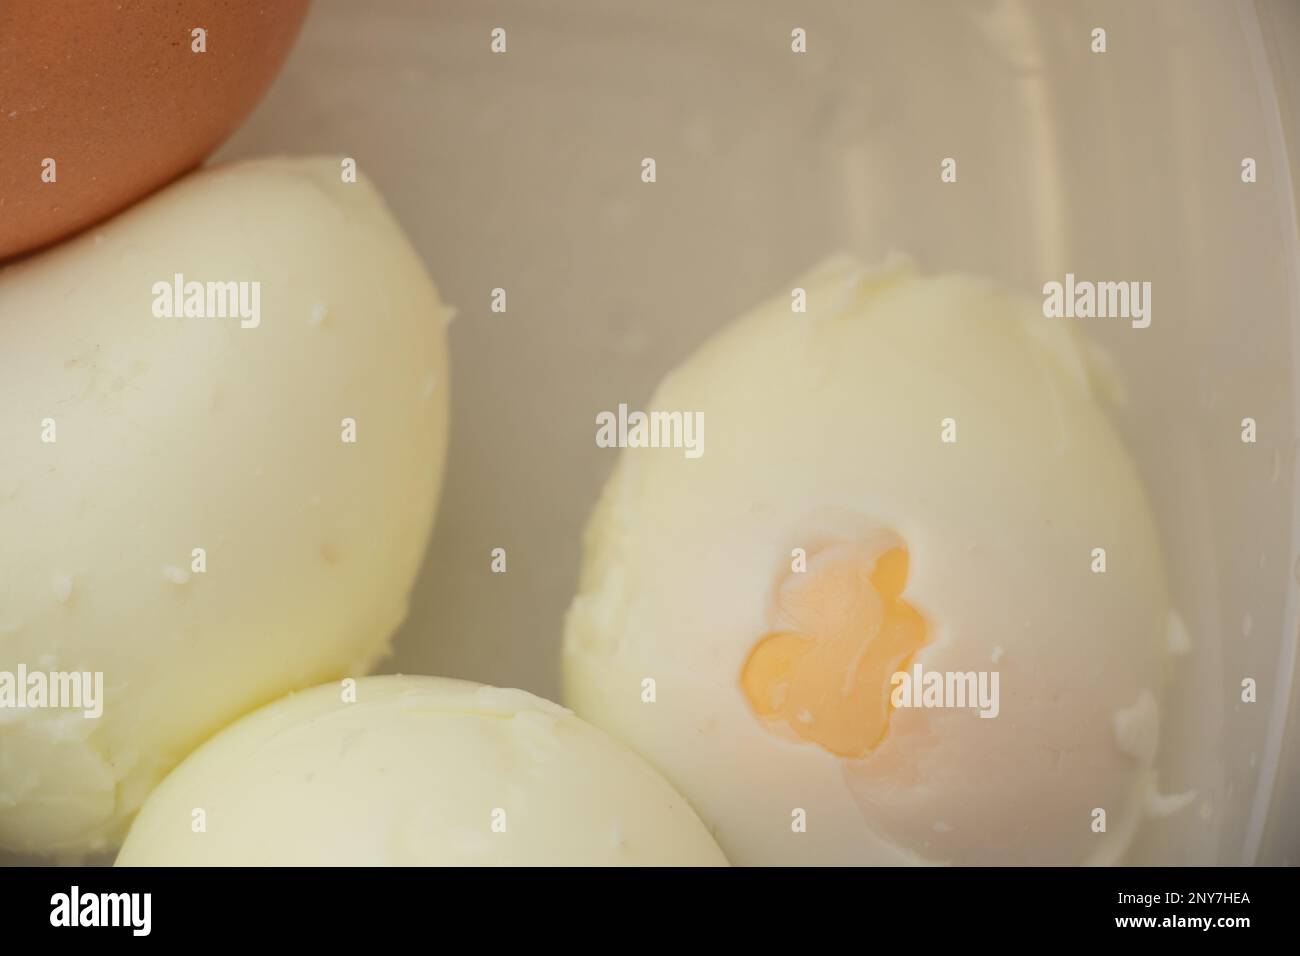 les œufs de poulet cuits sont dans un bol Banque D'Images